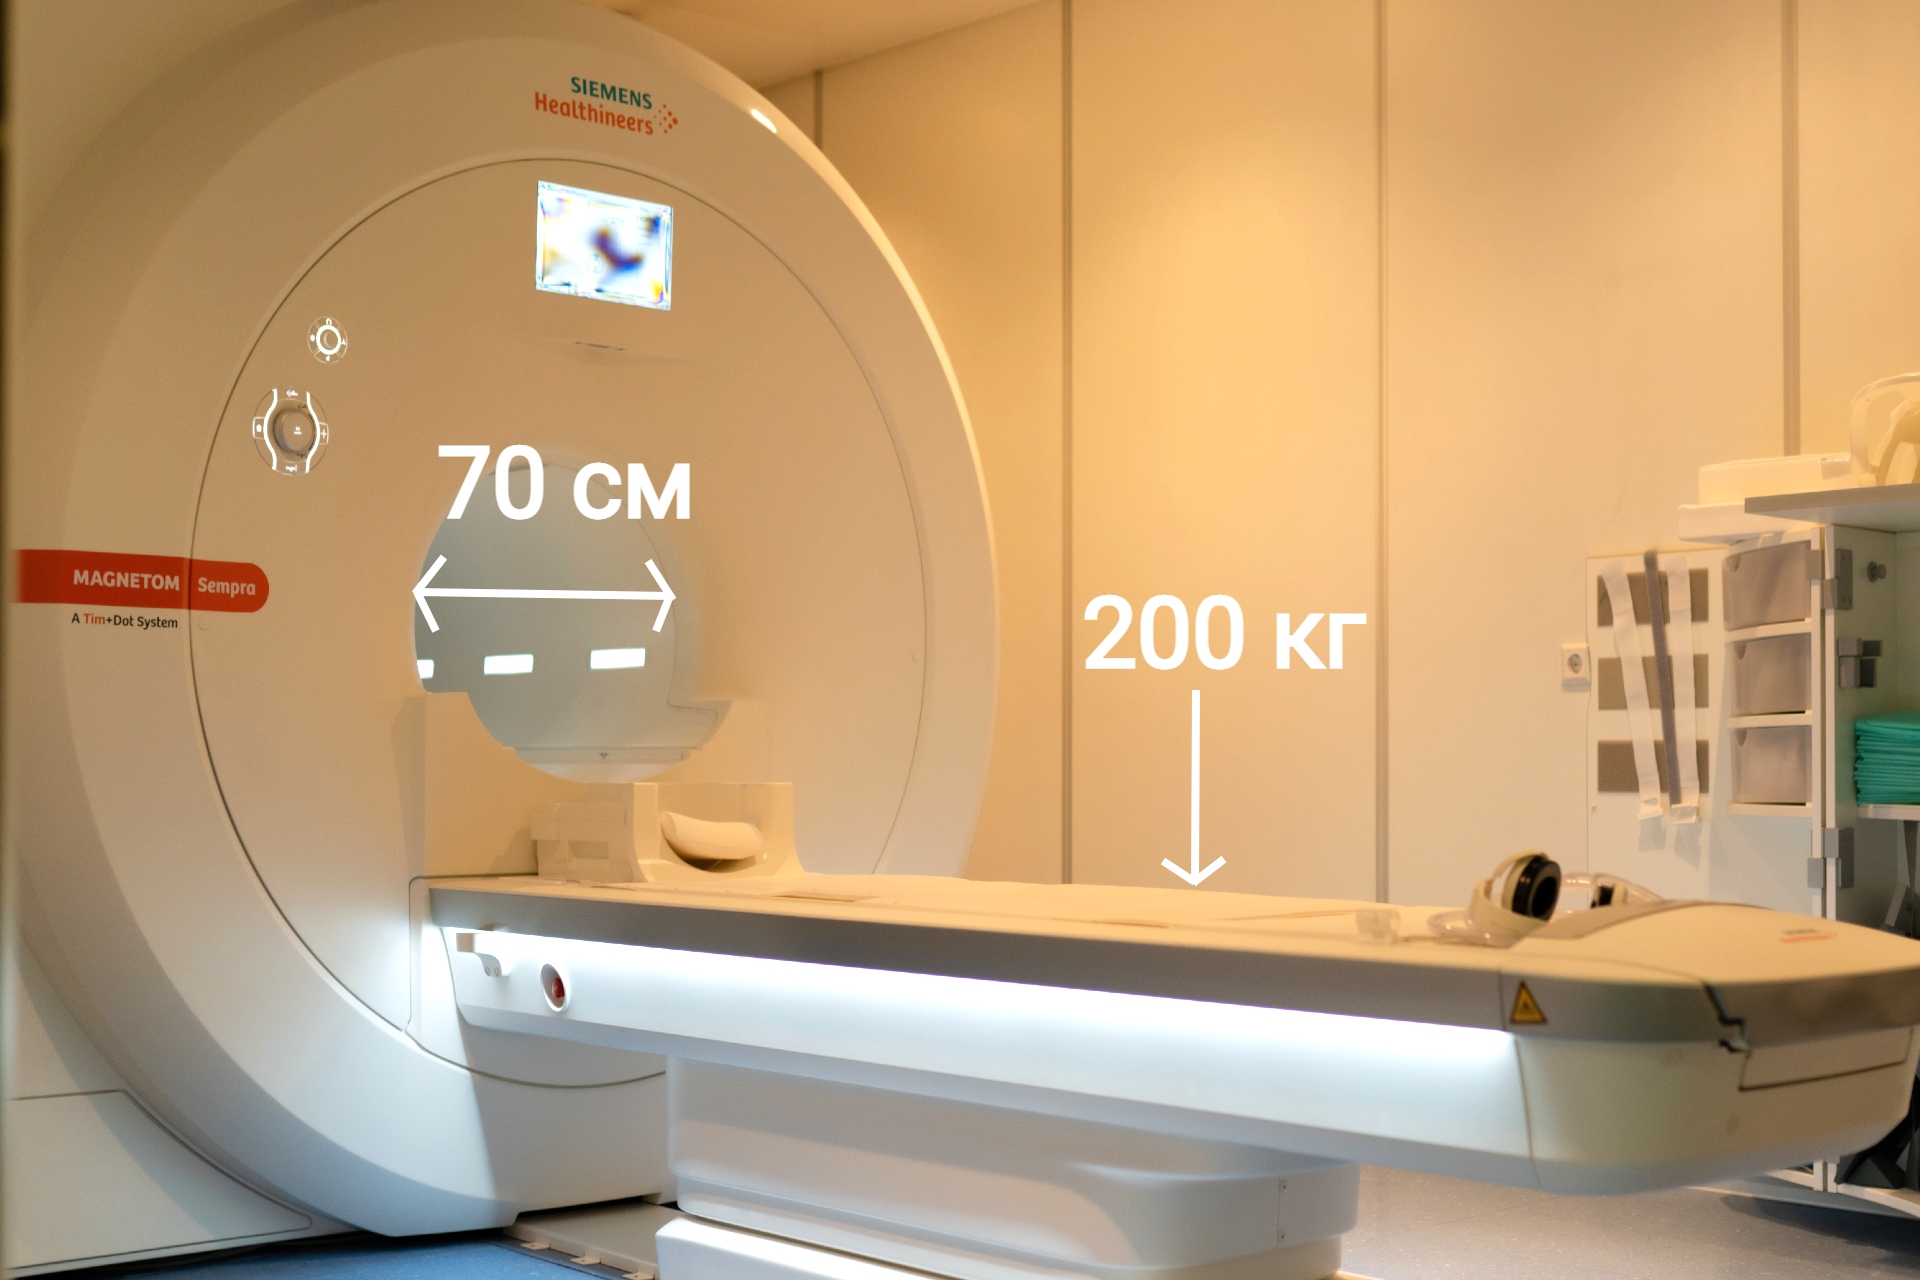 Магнитно-резонансная томография (МРТ)